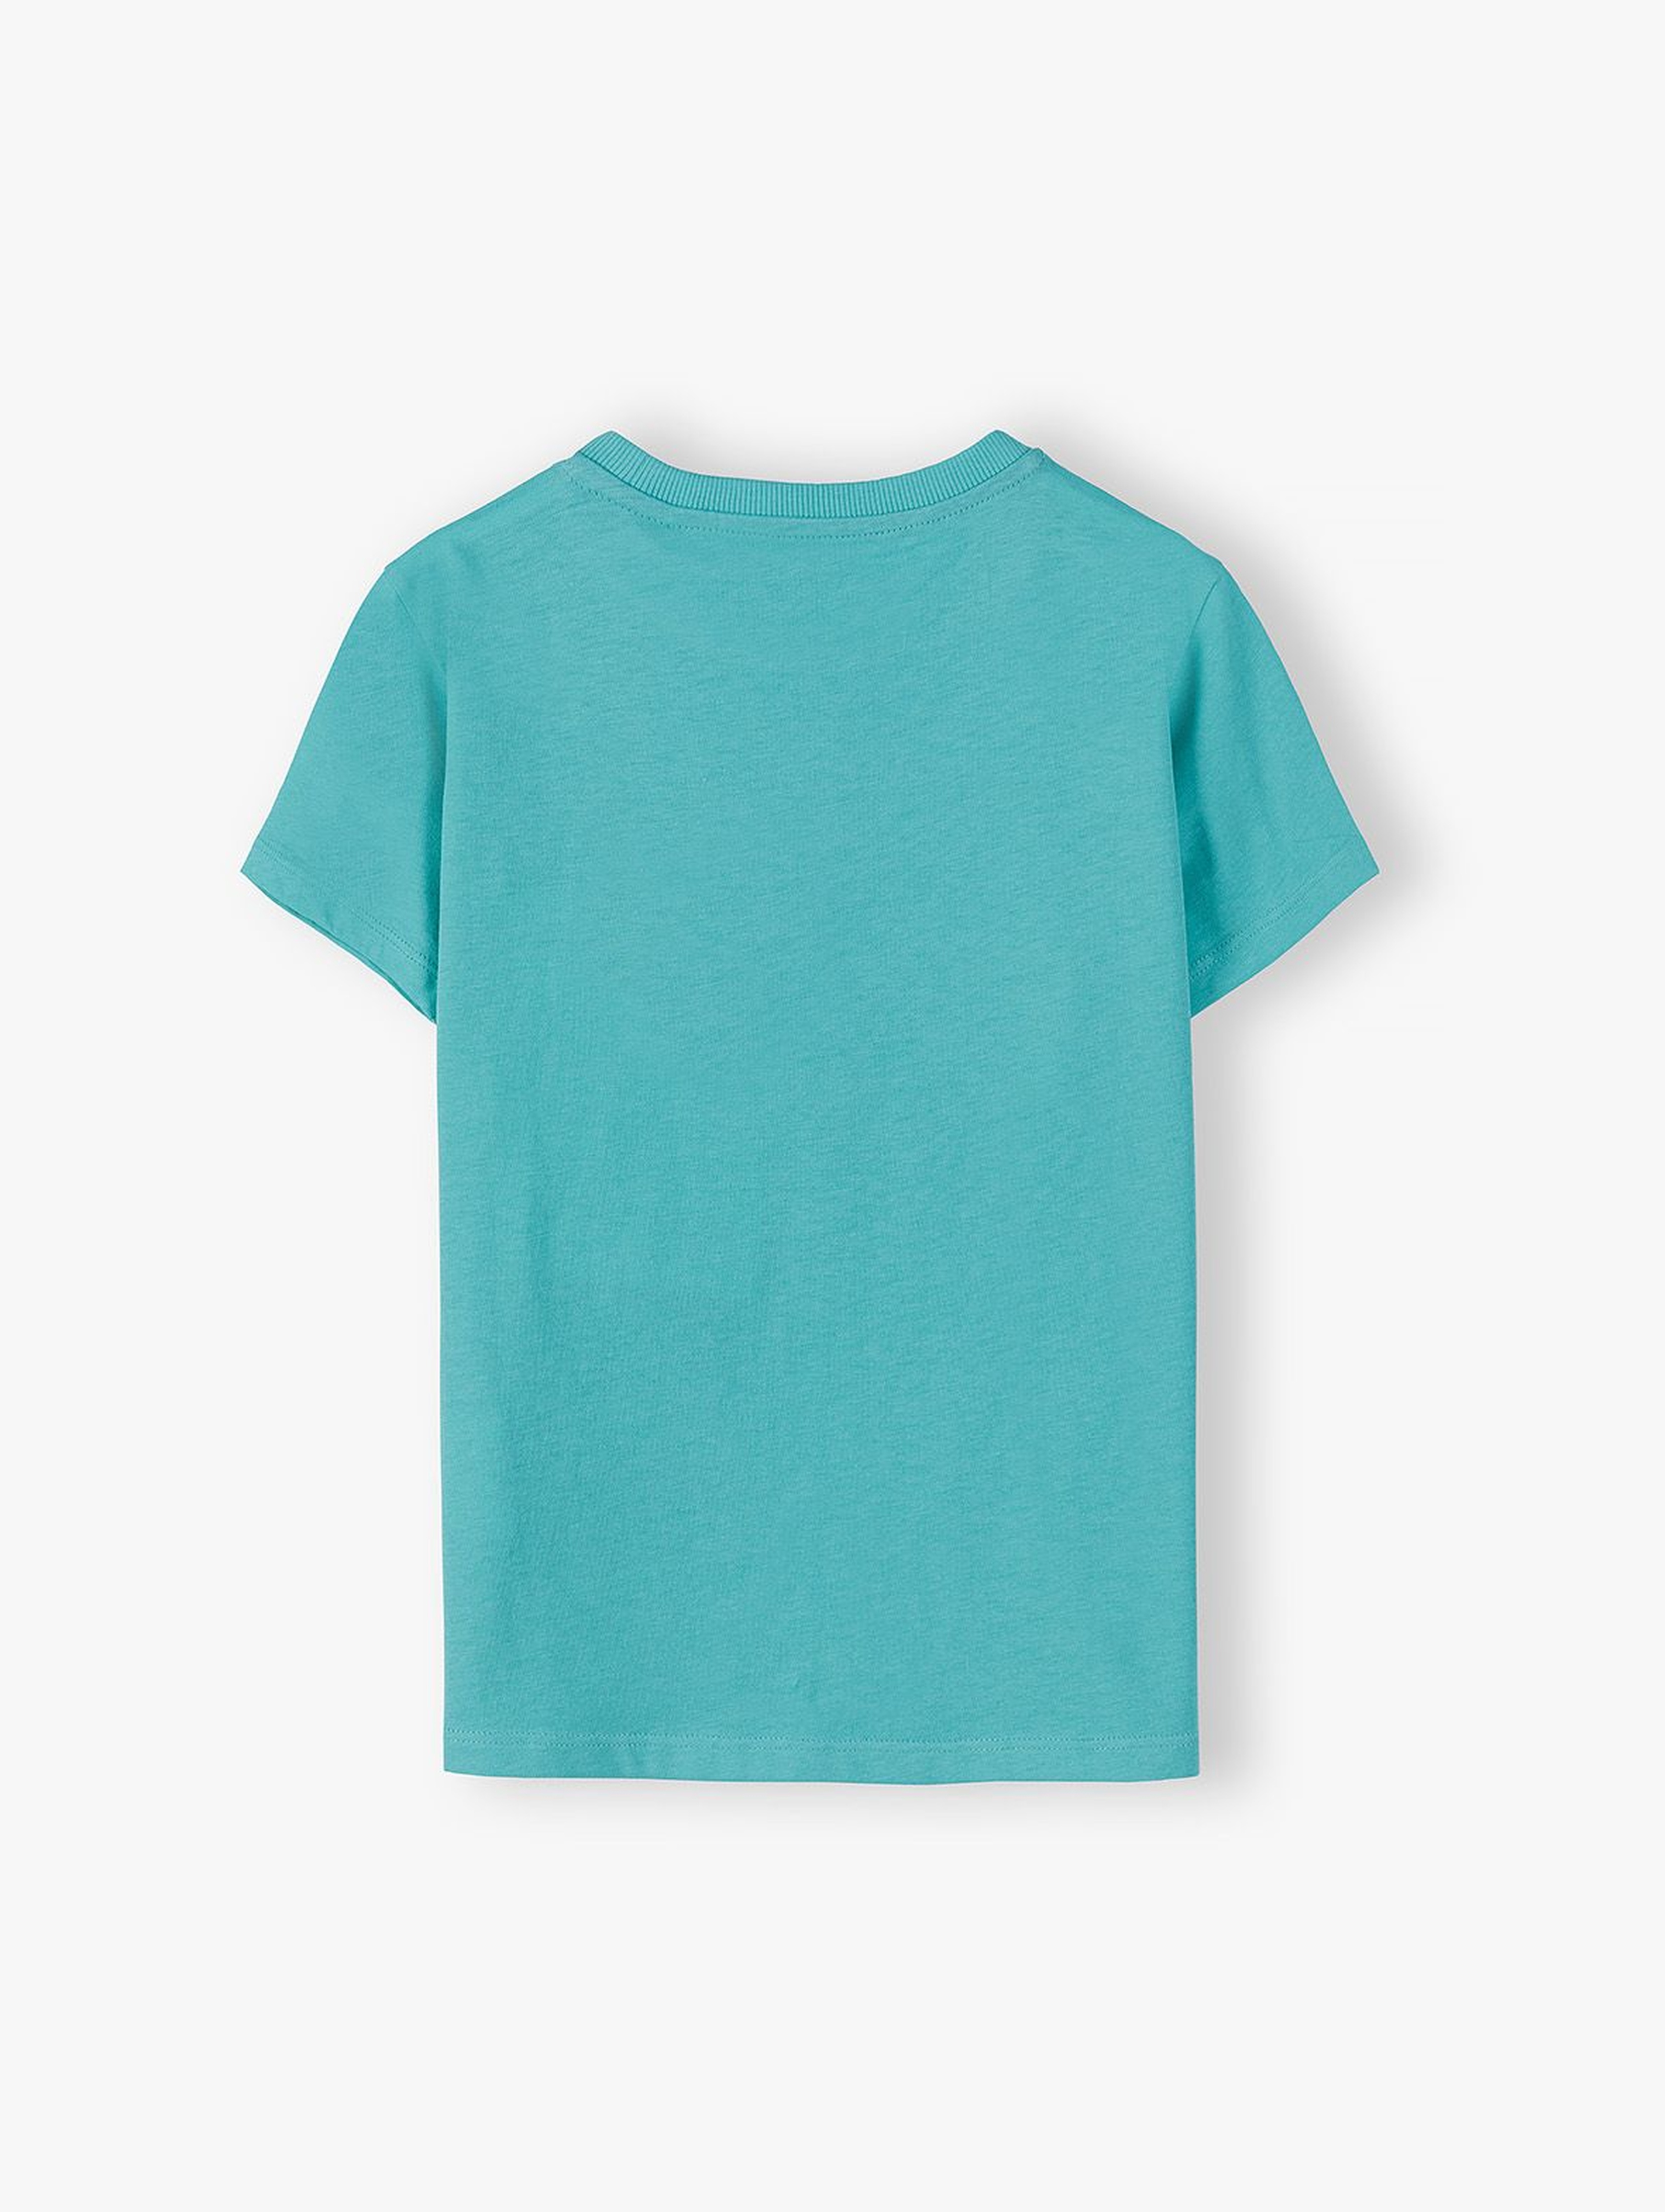 Dzianinowy T-shirt dla chłopca z miękkim nadrukiem - zielony